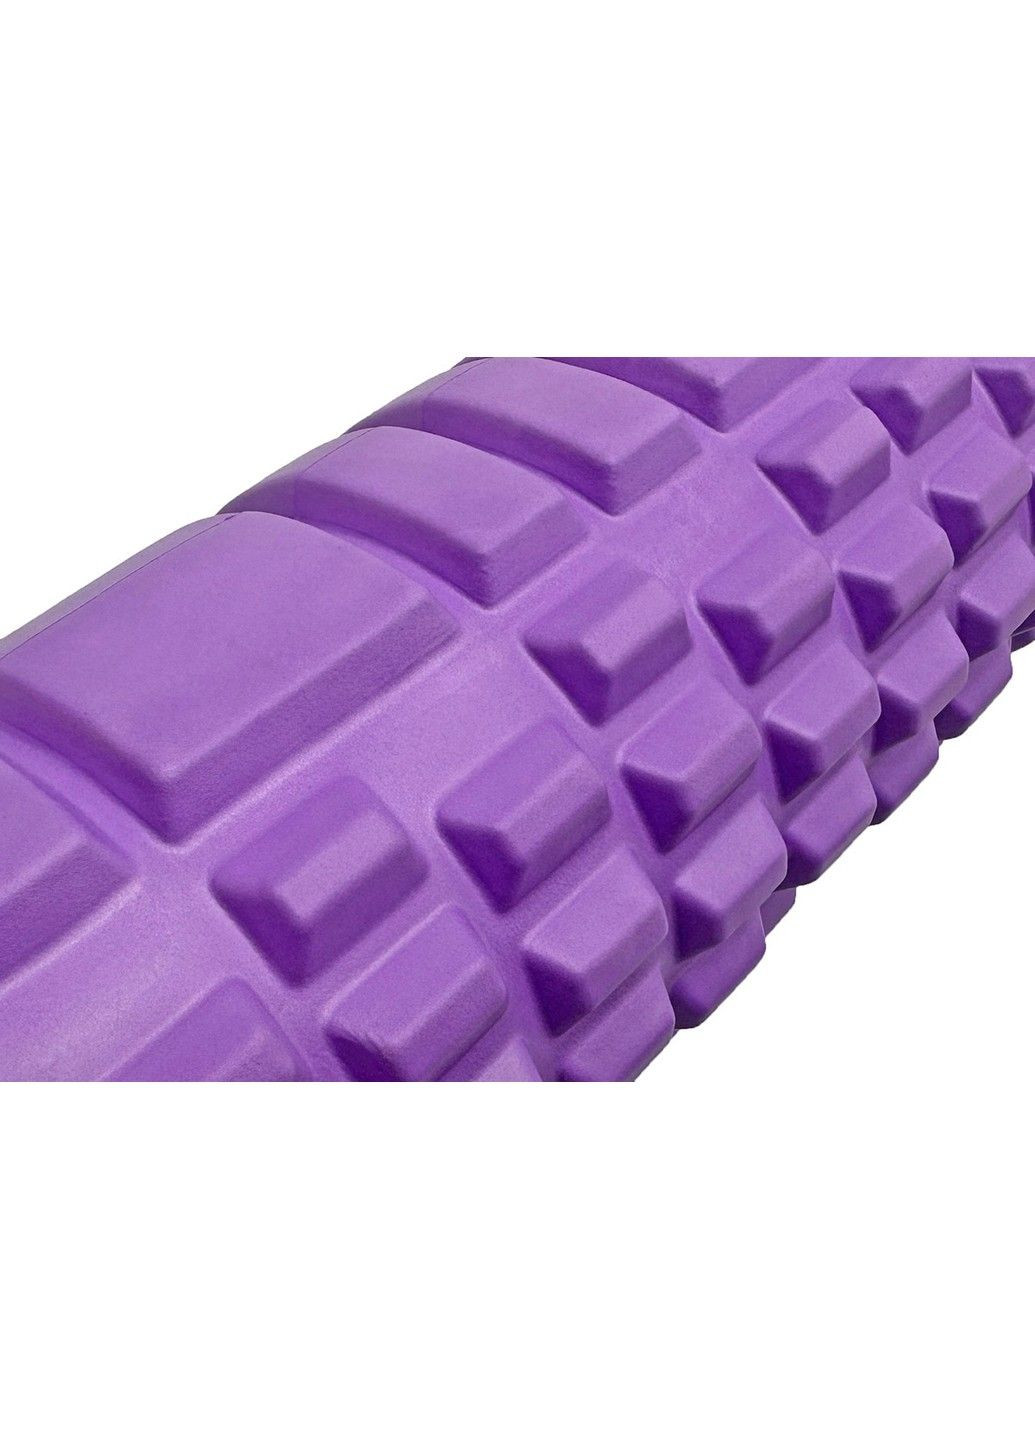 Массажный роллер Grid Roller 60 см v.3.1 EF-2037-V Violet EasyFit (290255561)